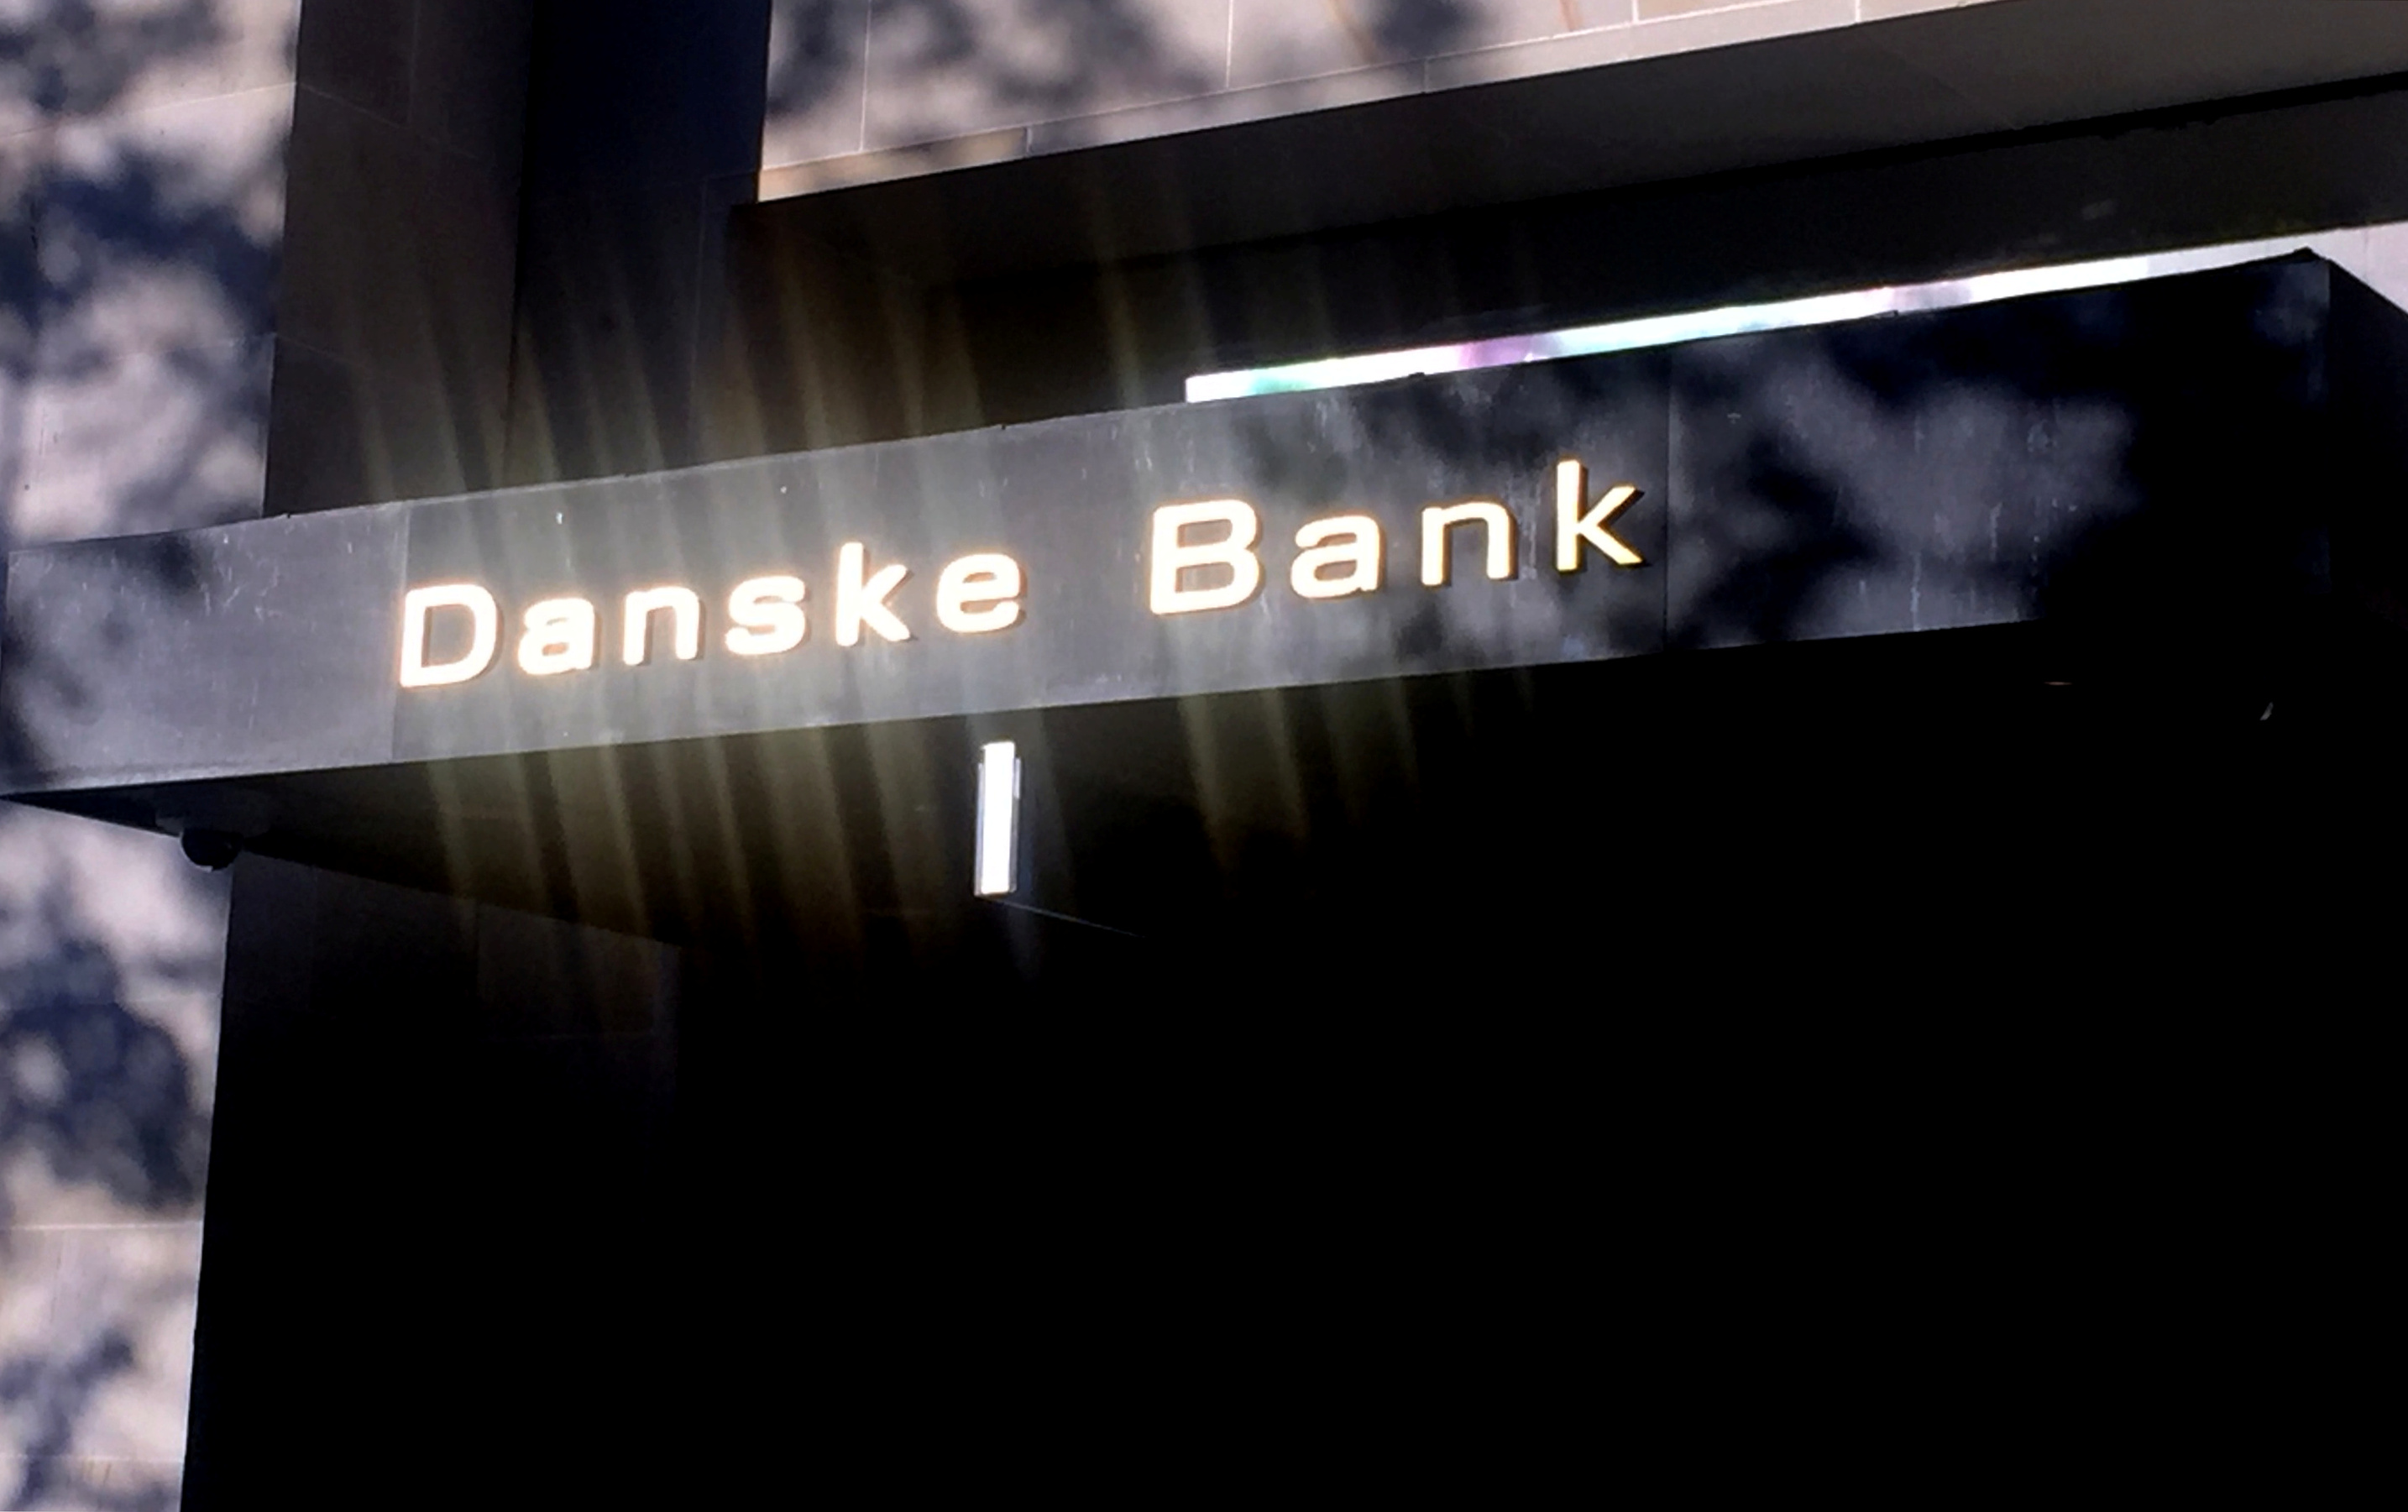 Après le scandale de blanchiment, jusqu'à 2000 départs volontaires à la Danske Bank